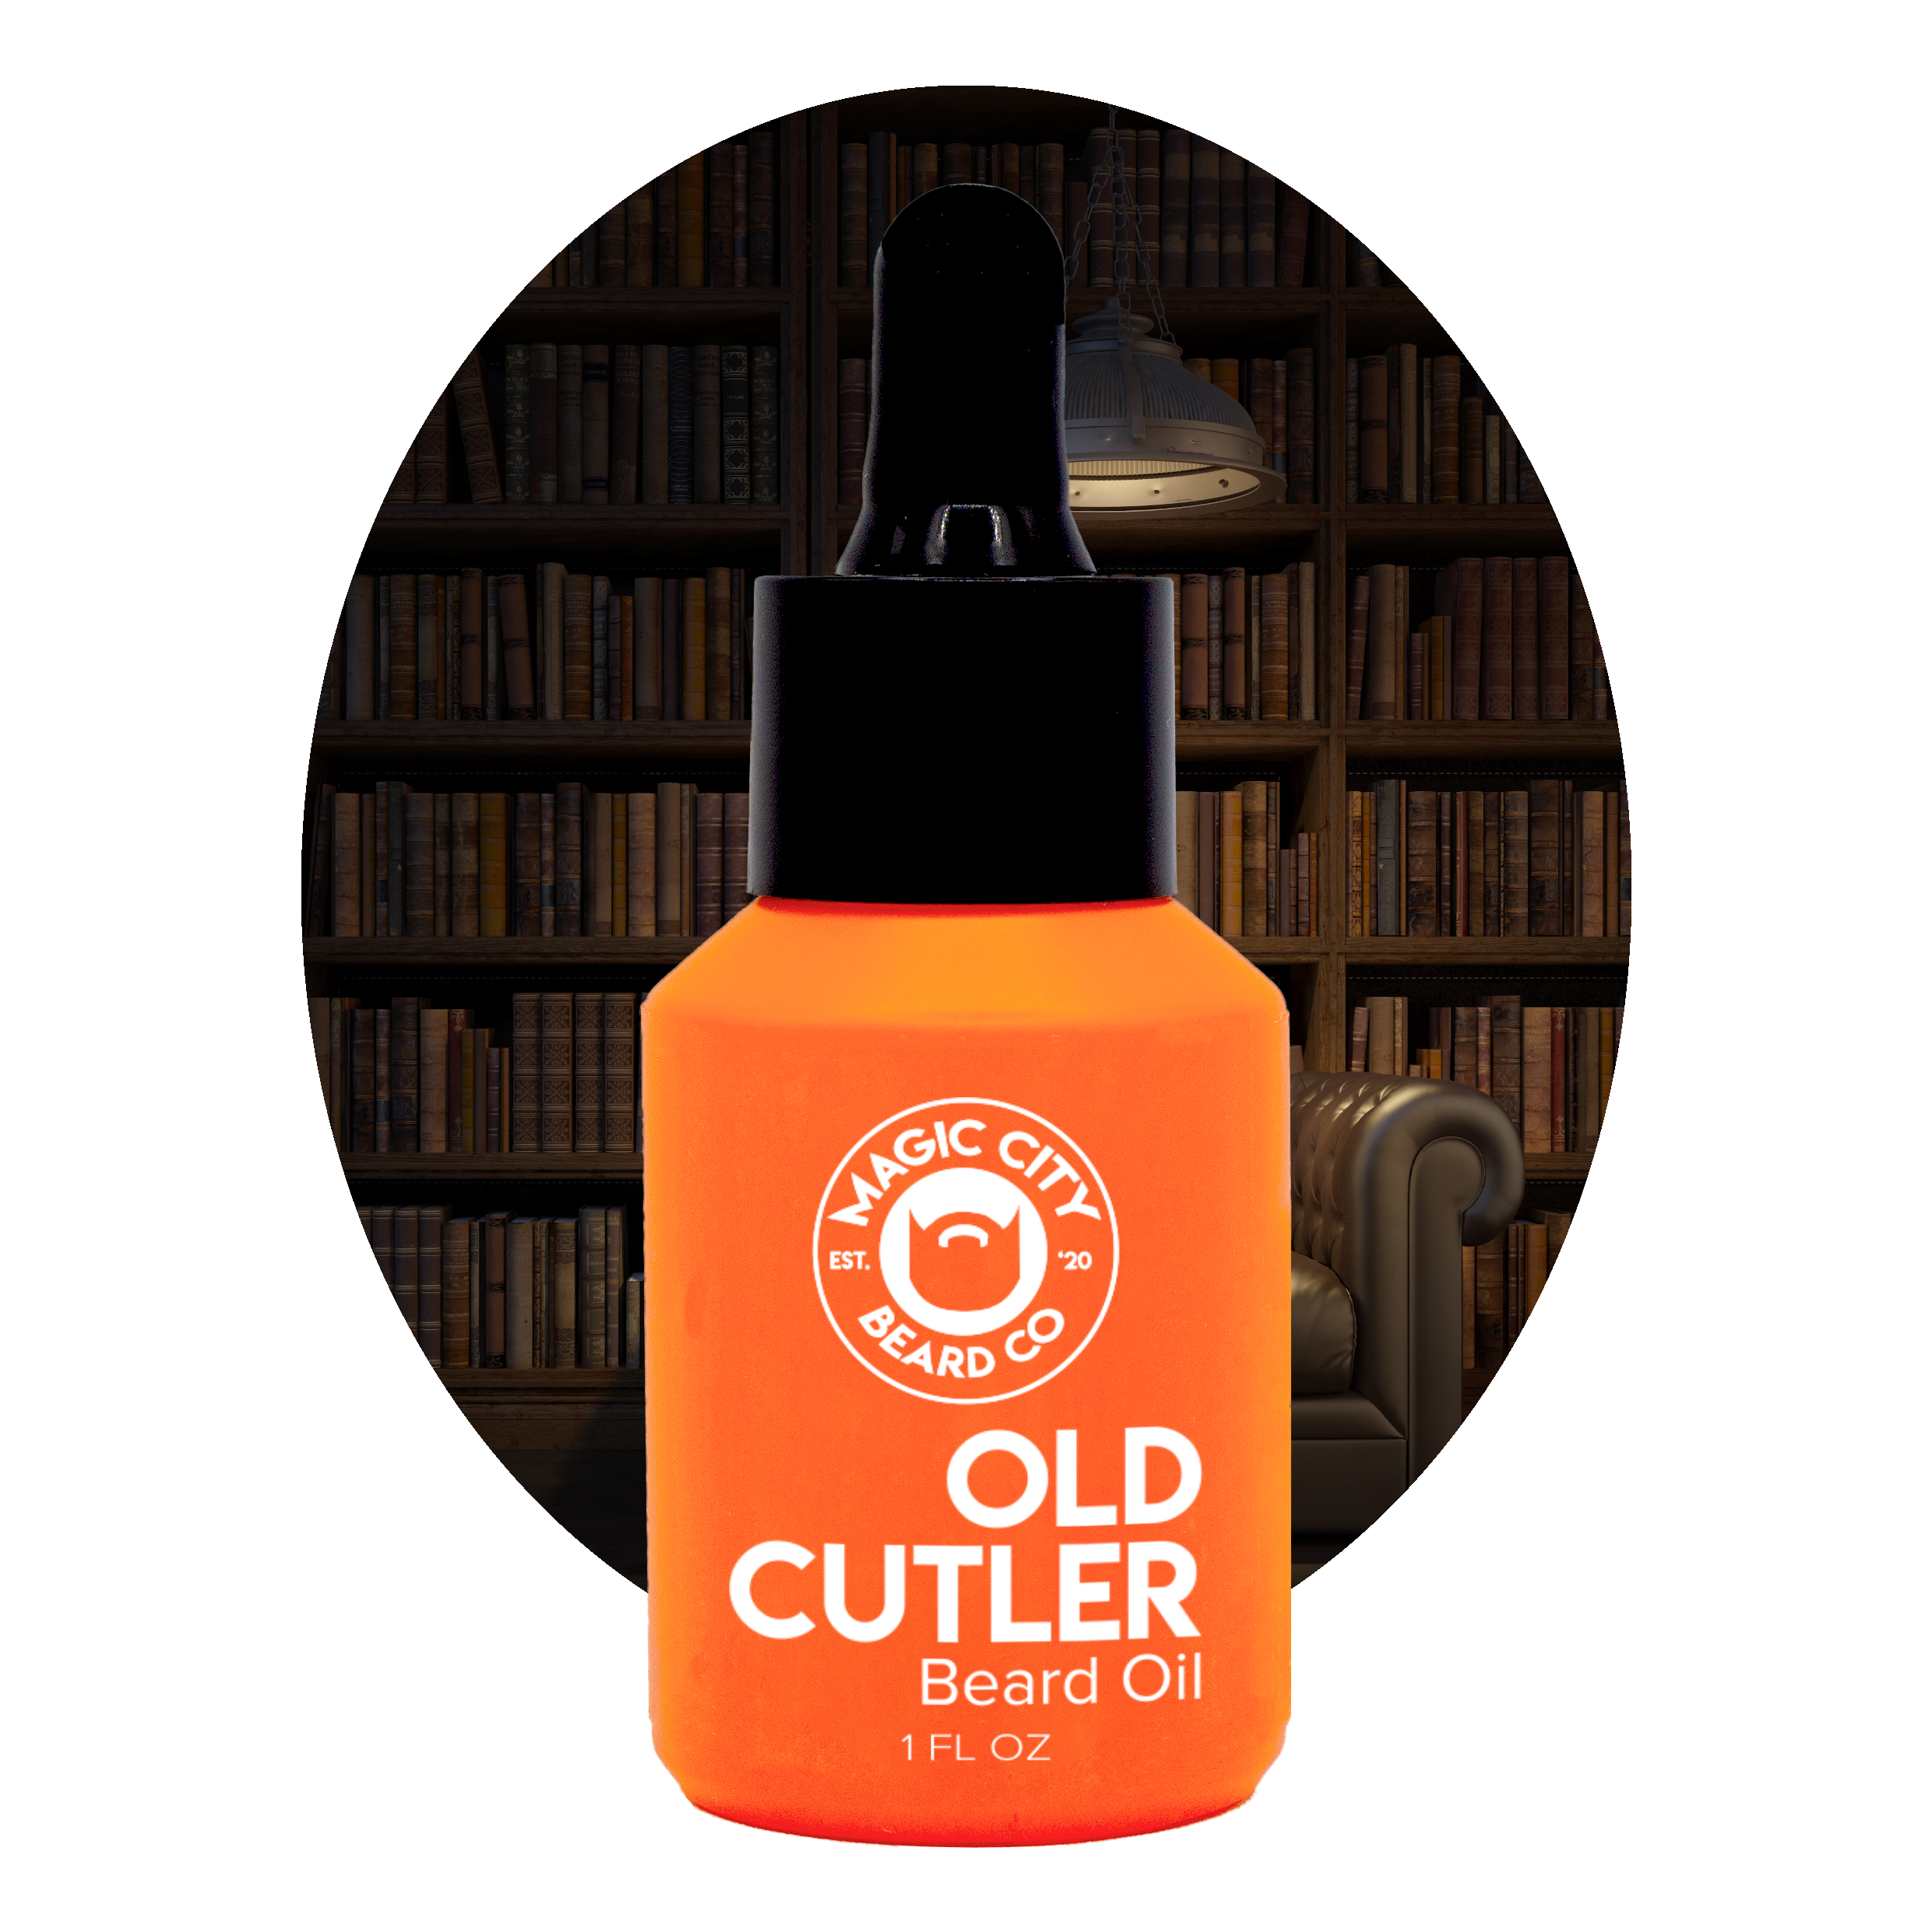 Old Cutler Beard Oil